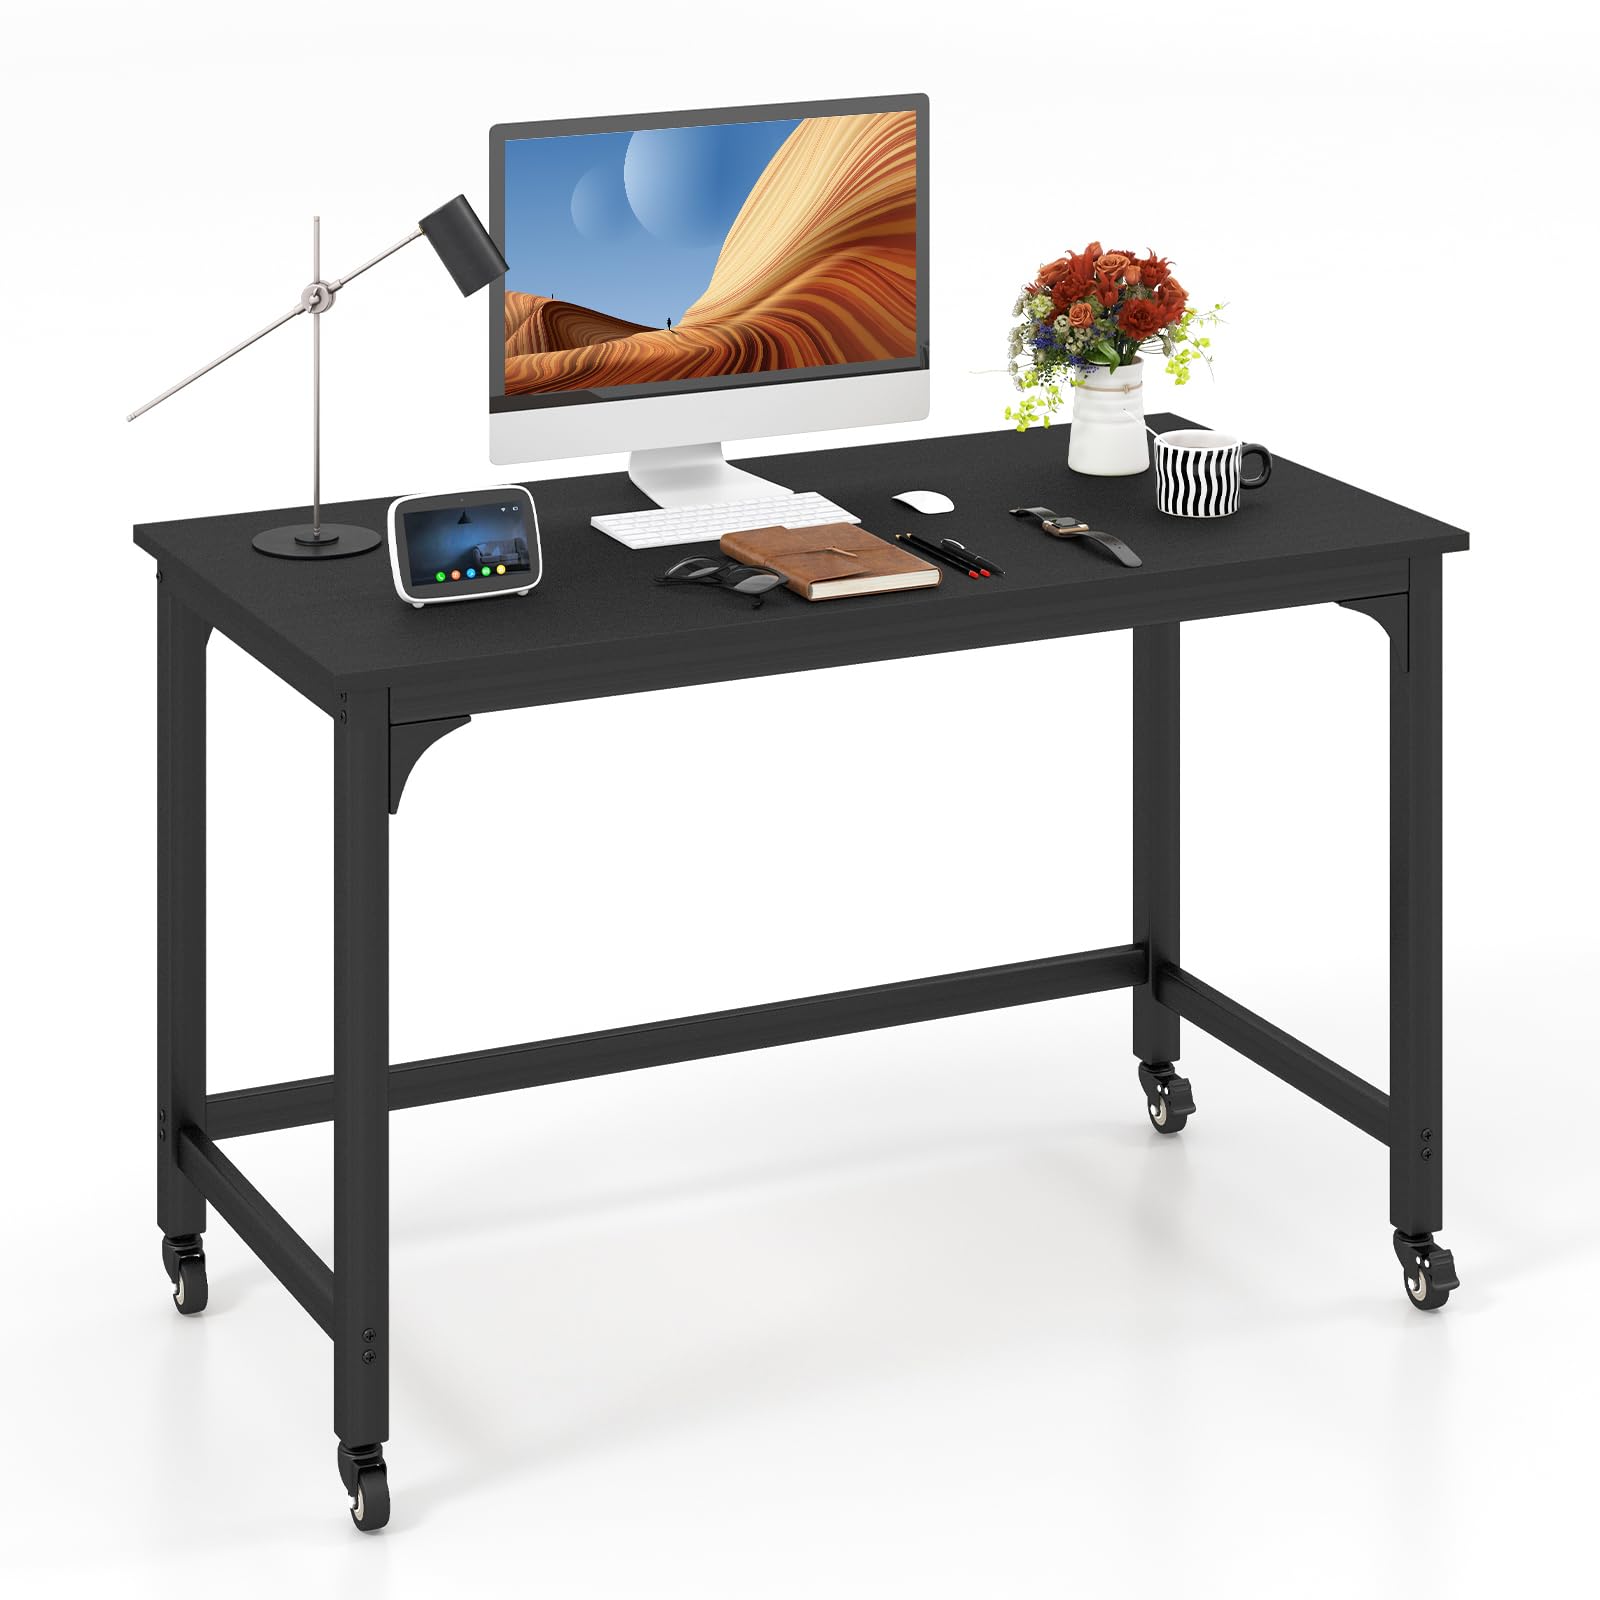 Giantex 48" Rolling Computer Desk